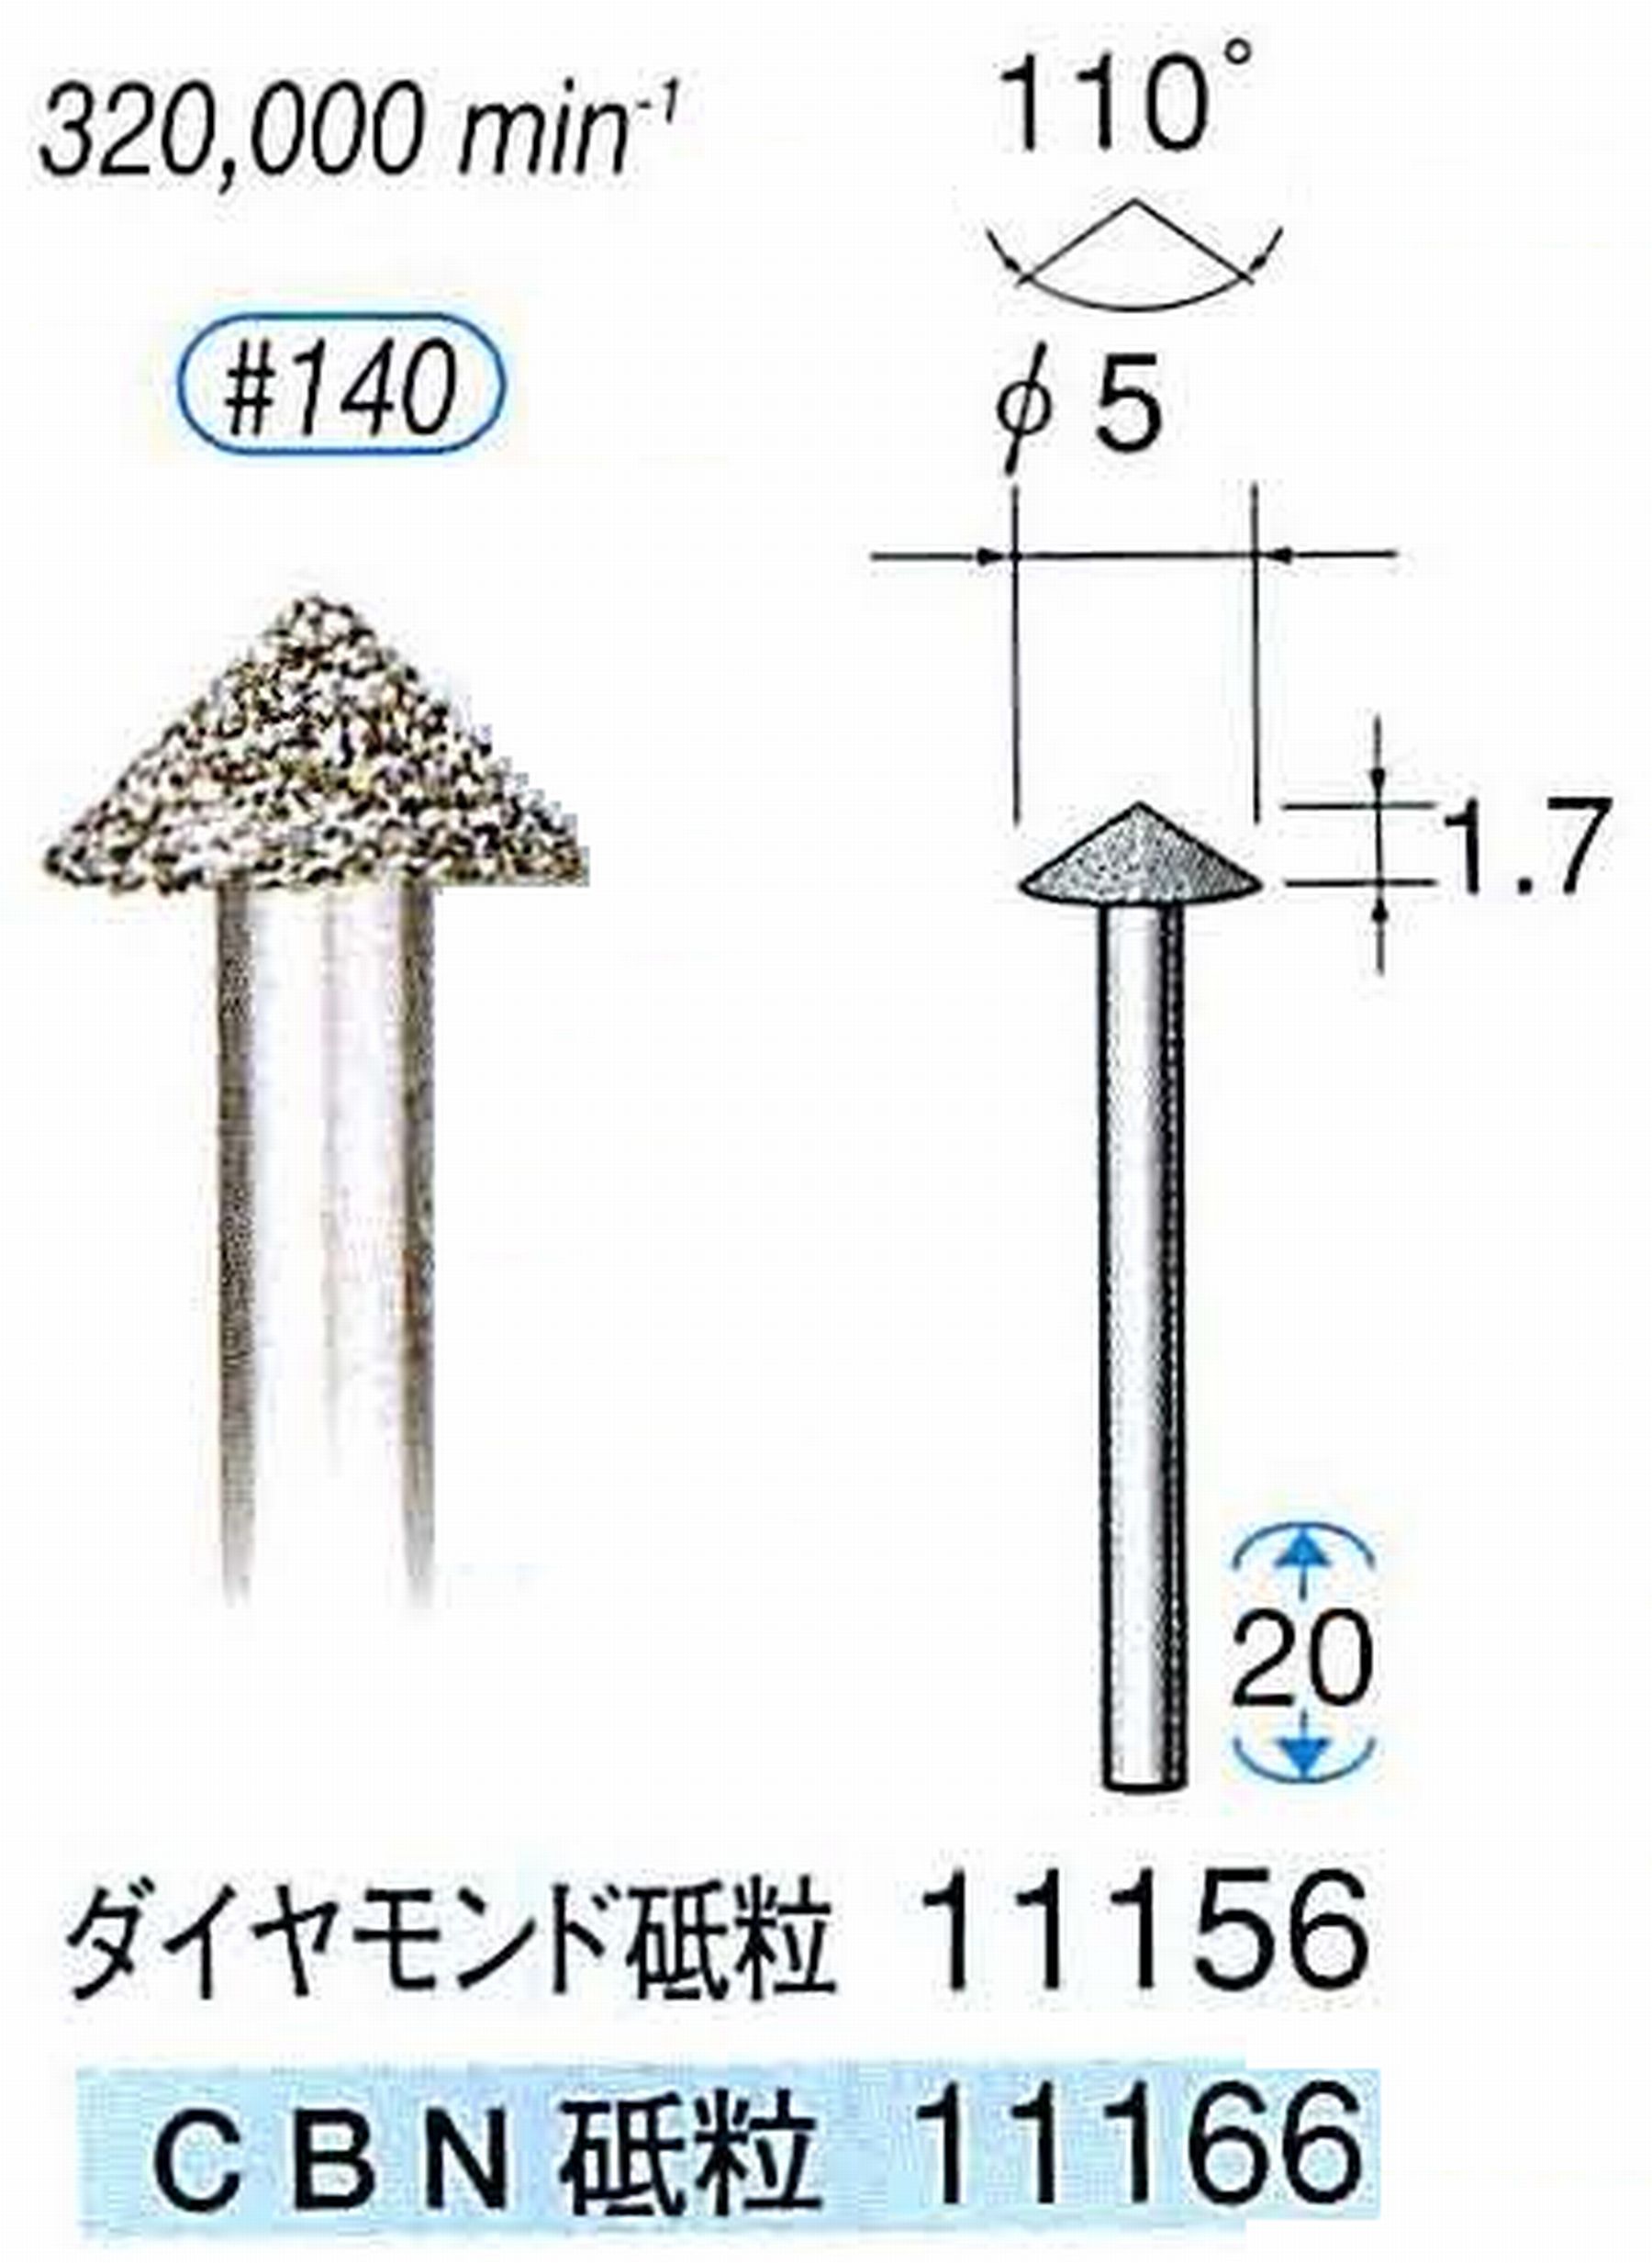 ナカニシ/NAKANISHI 電着CBNバー(ミニチュアタイプ)CBN砥粒 軸径(シャンク)φ1.6mm 11166